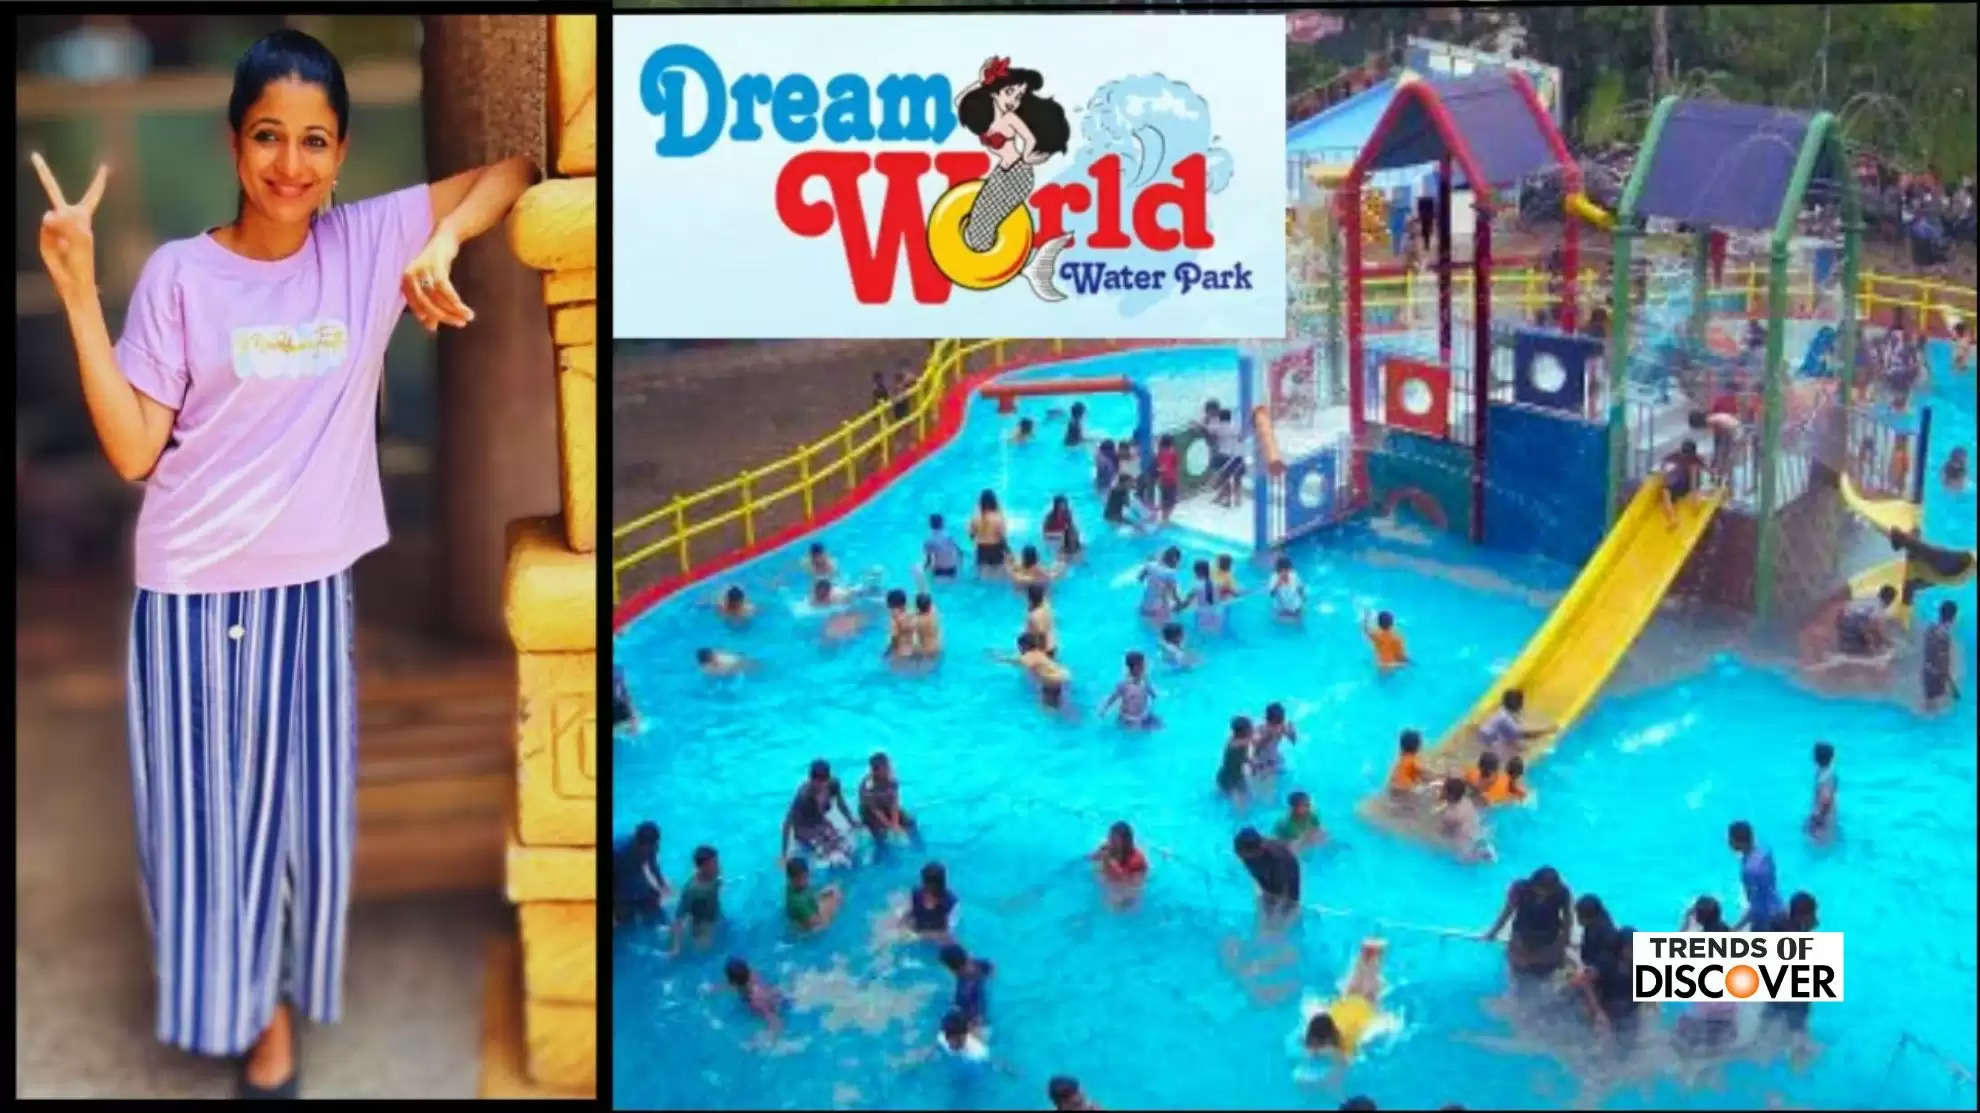 Dreamworld Water Park